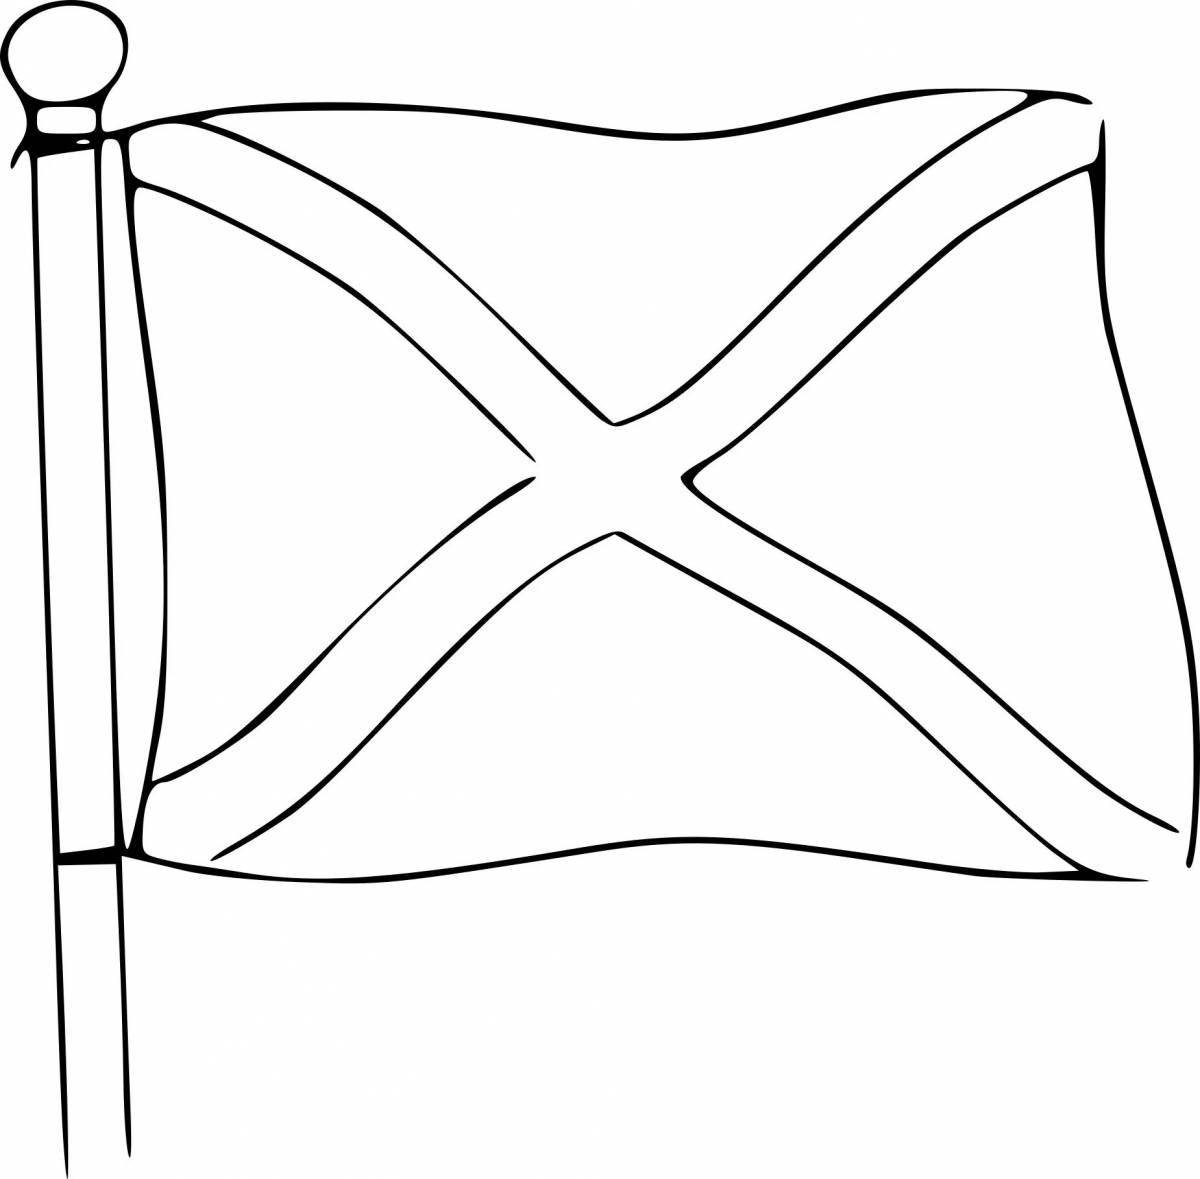 Раскраска жирный флаг шотландии